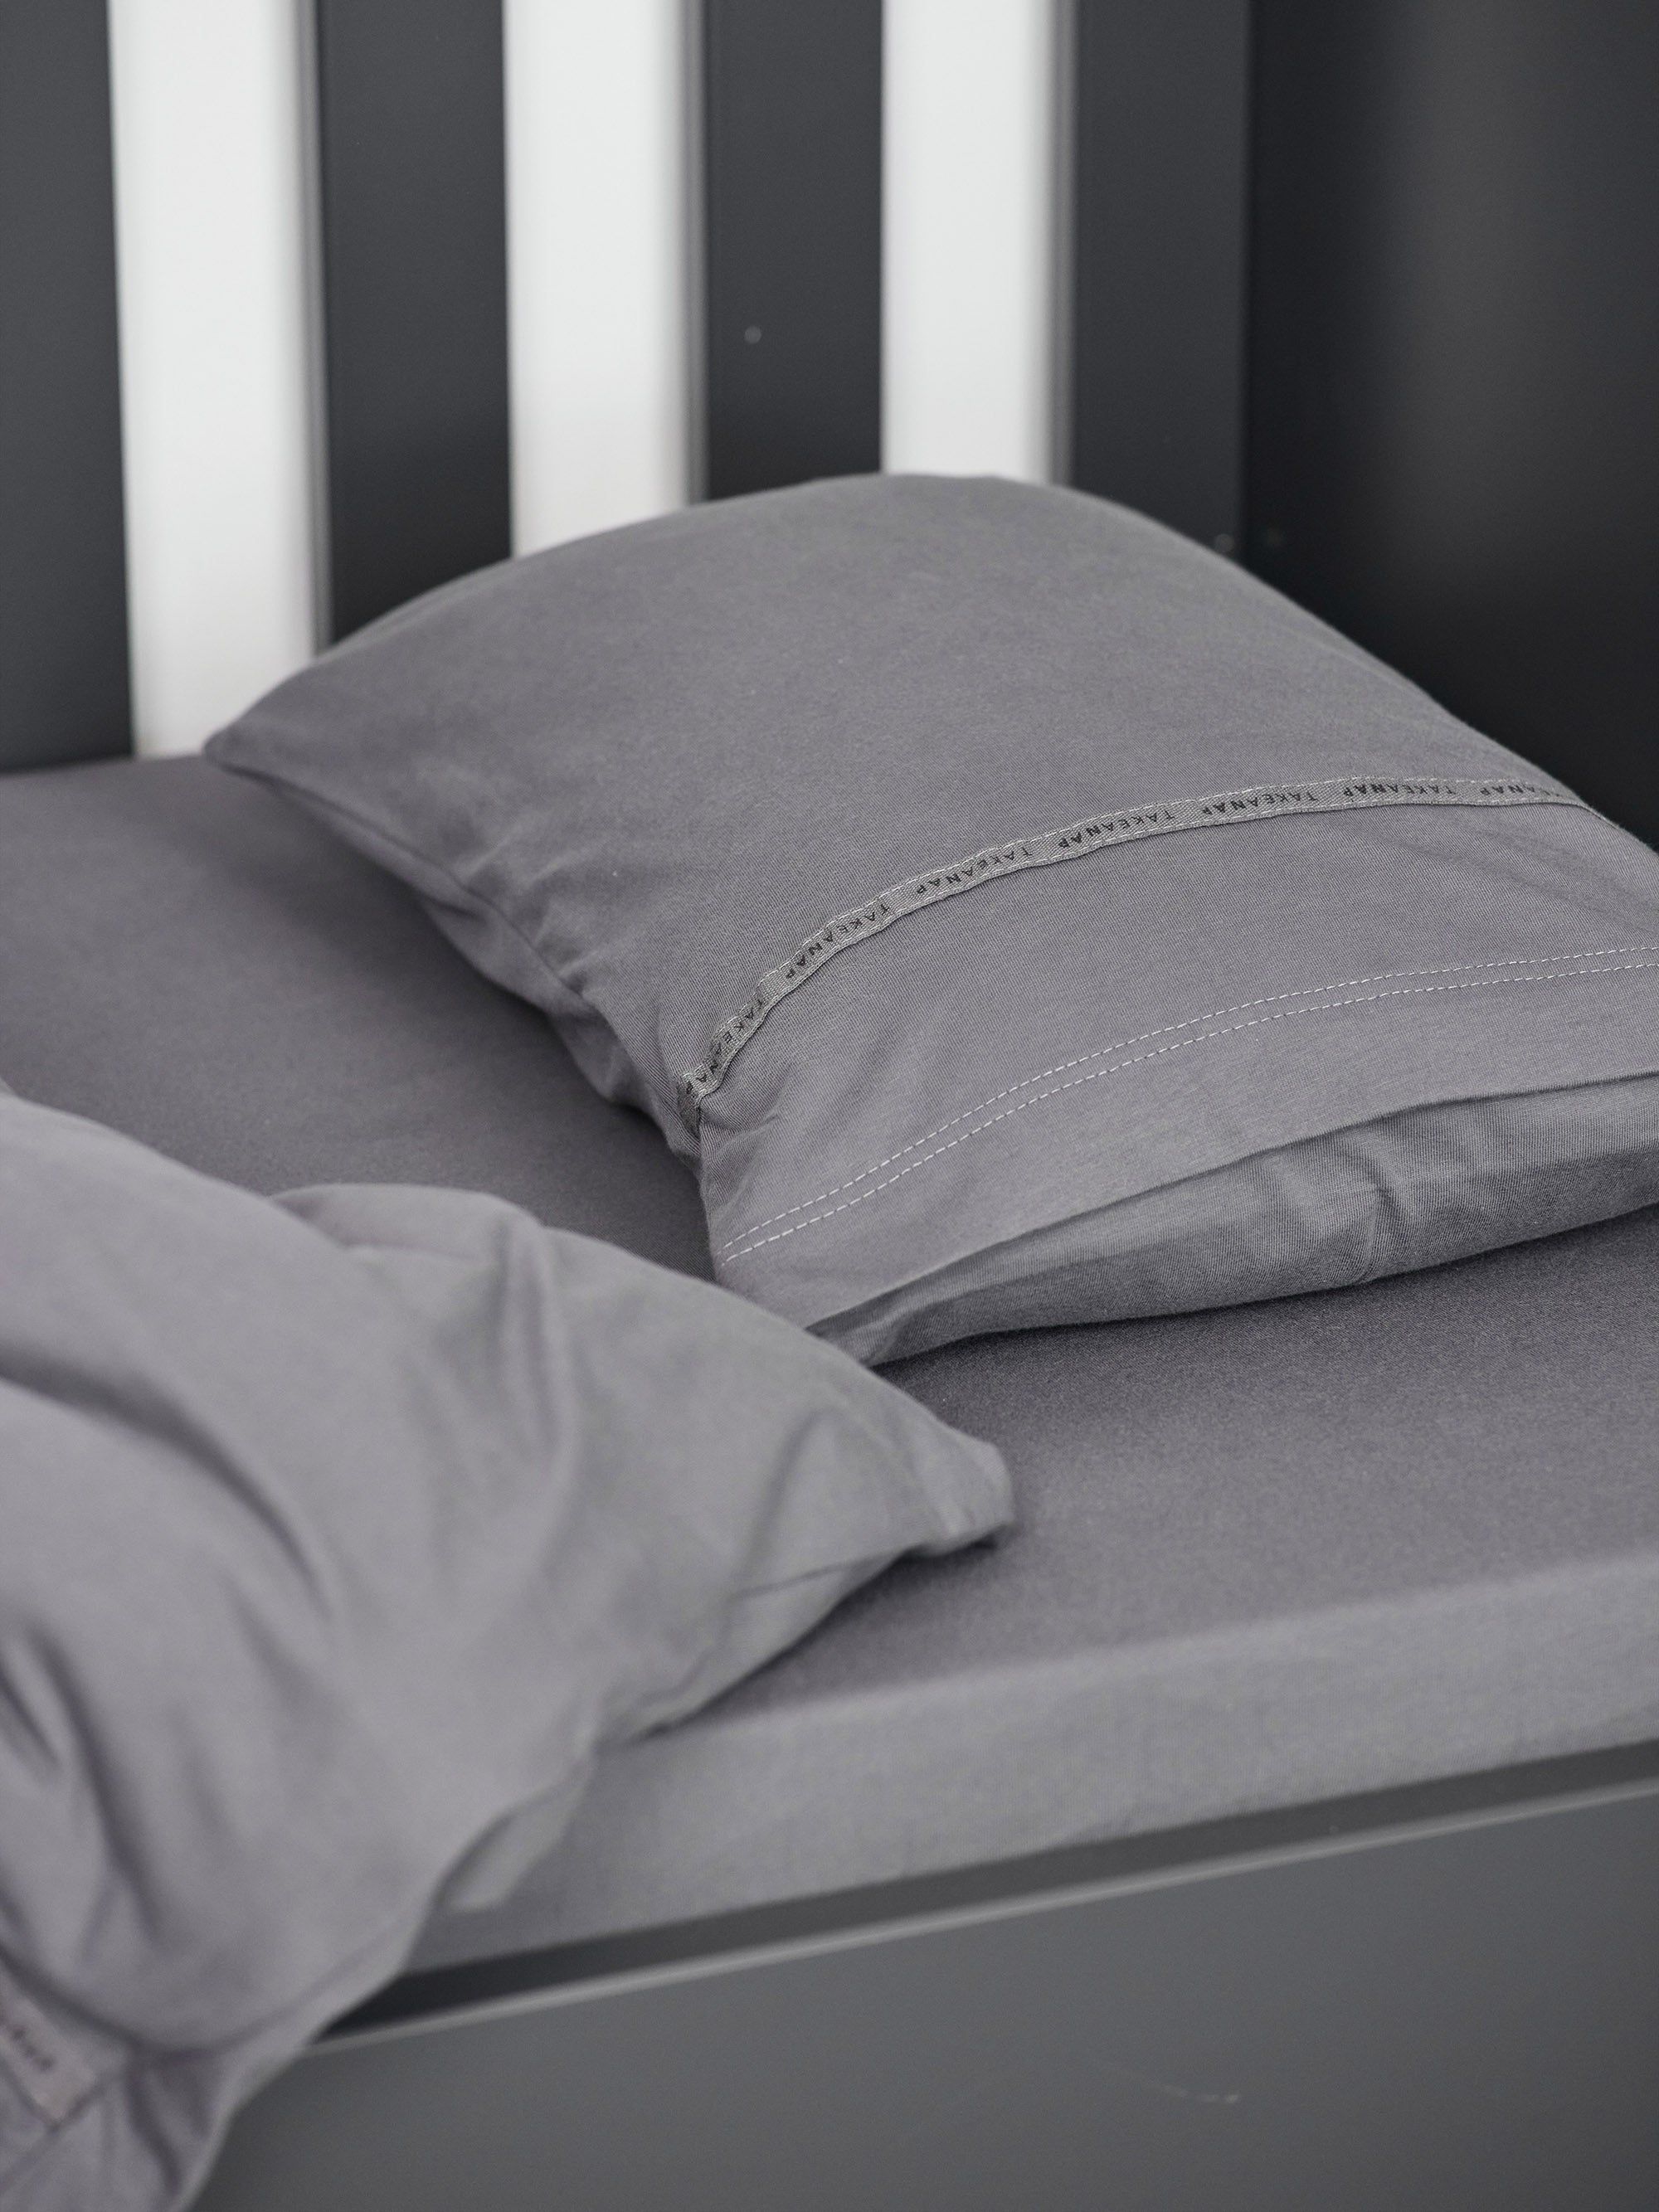 כרית עם ציפית לכרית קטנה בצבע אפור עם שמיכת פוך בתוך מיטת תינוק שחורה